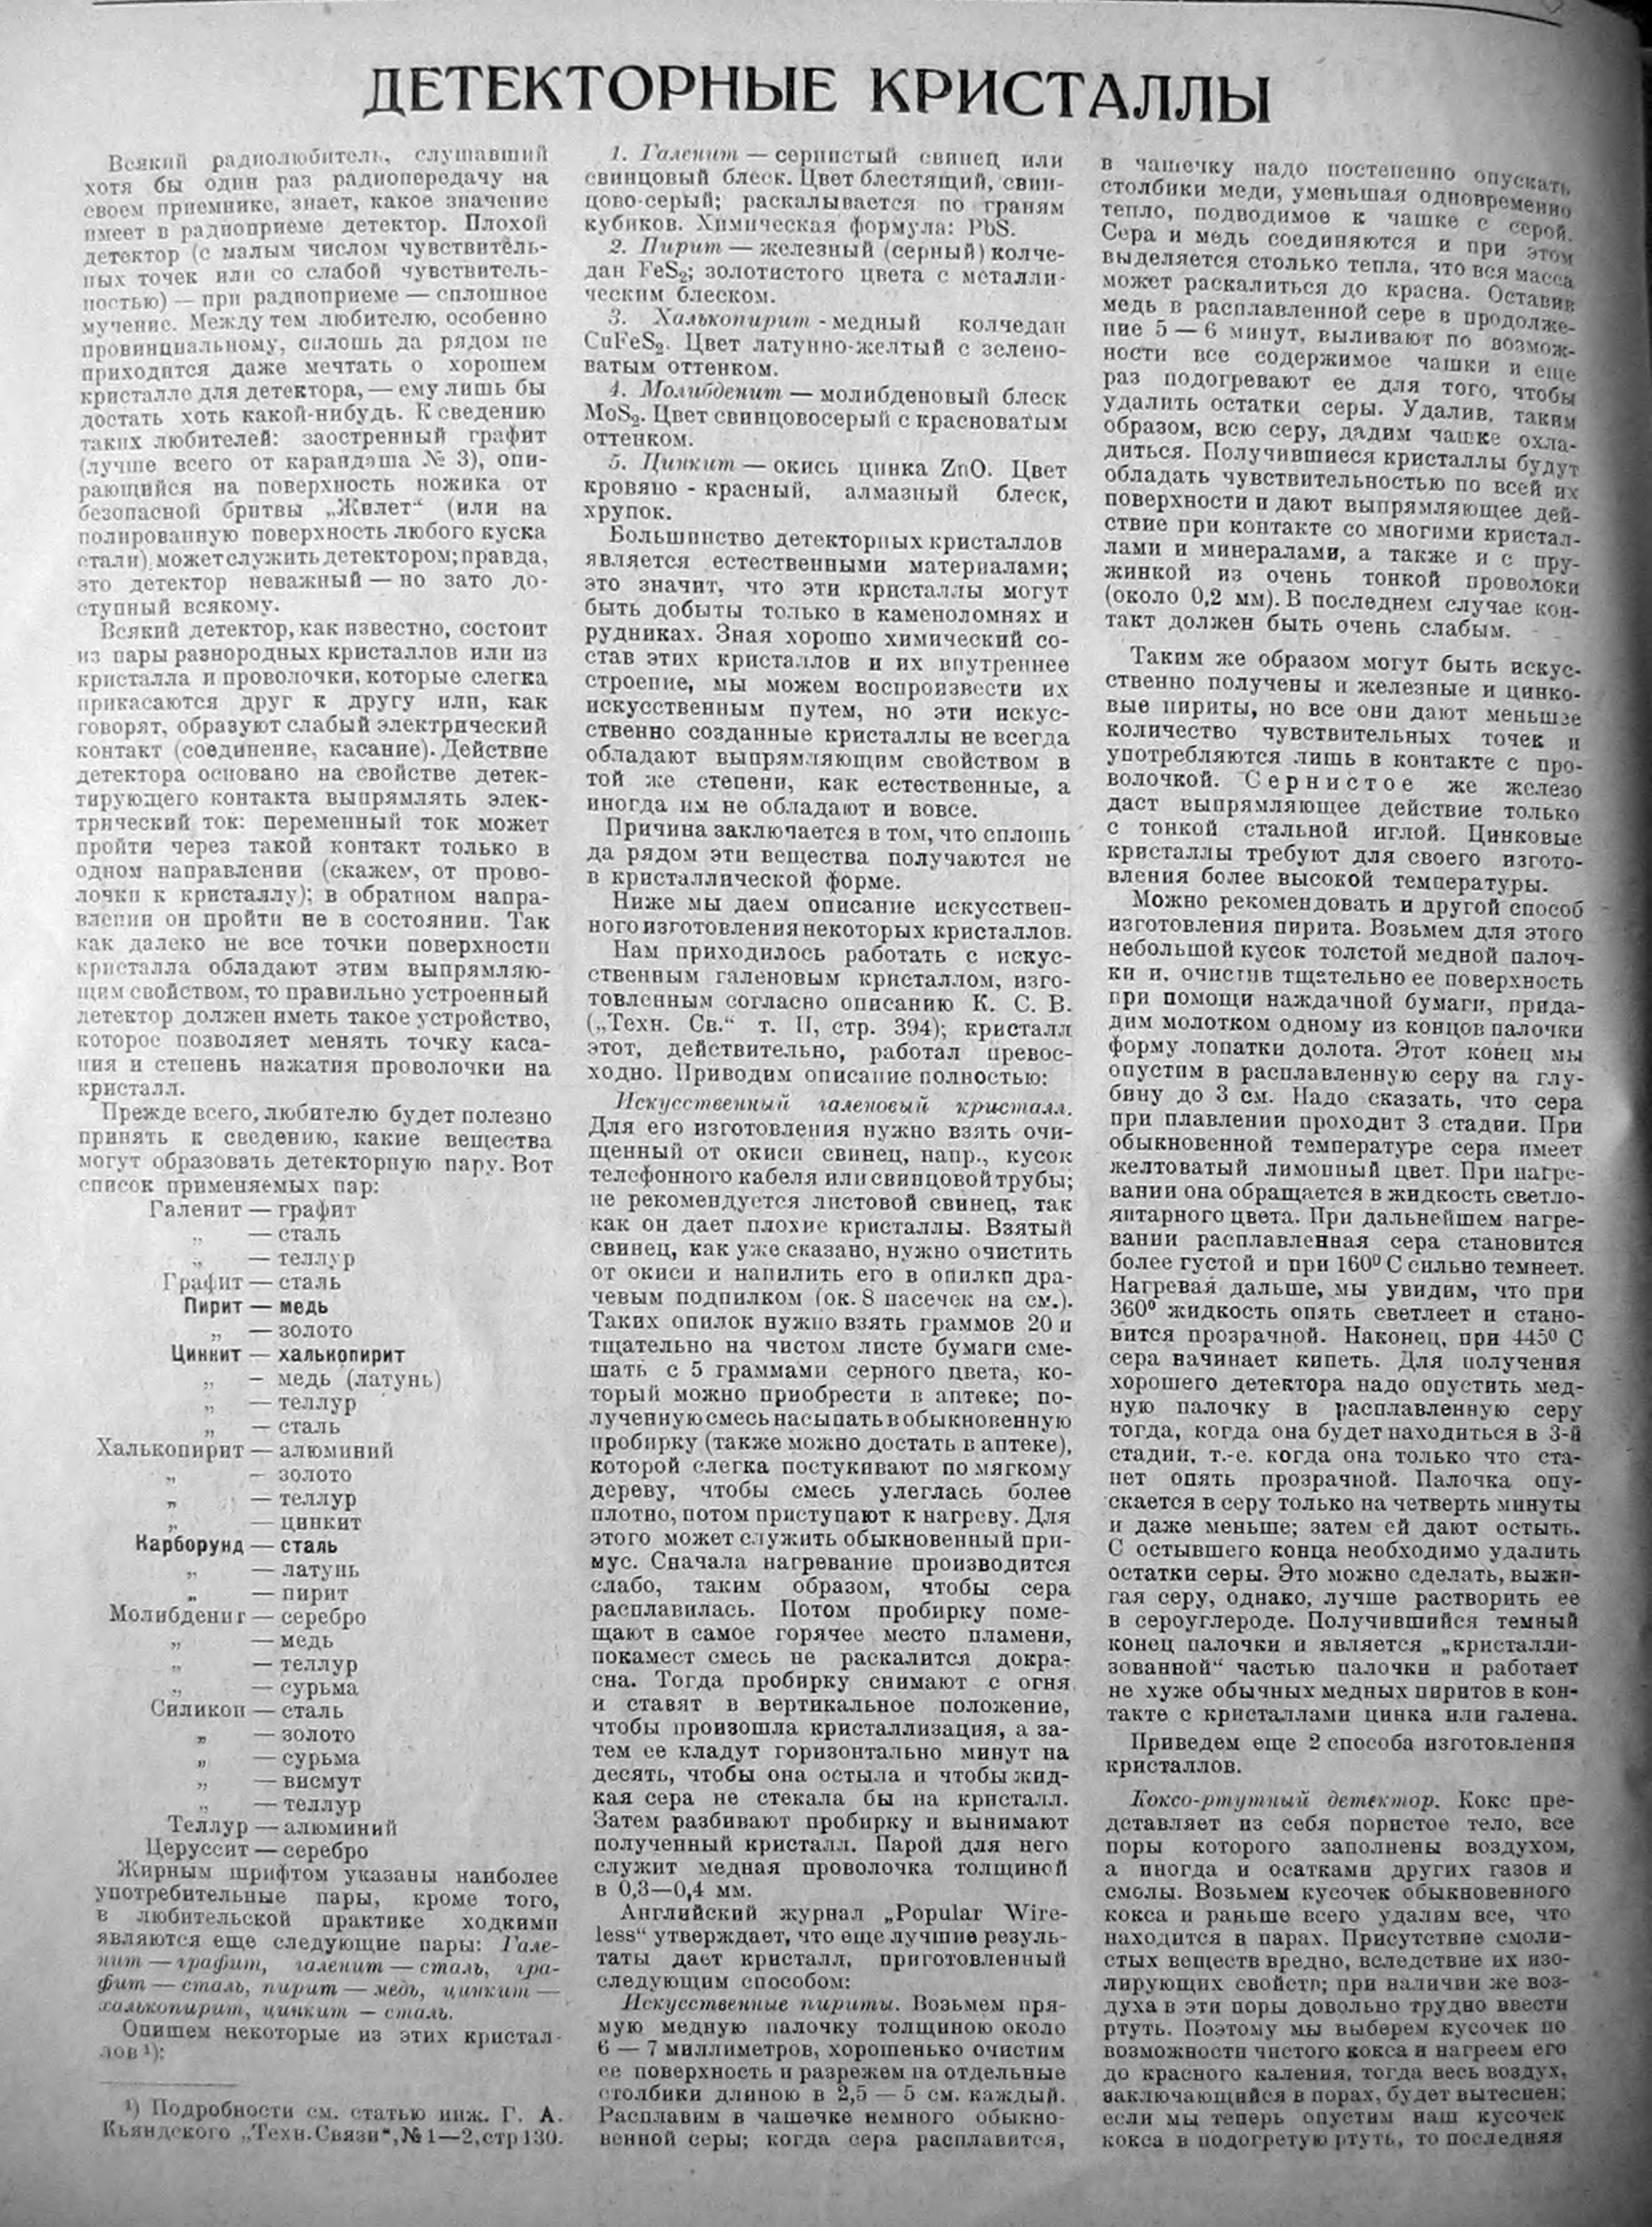 Статья по выбору материала для детекторного кристалла, журнал "Радиолюбитель" 1924 год